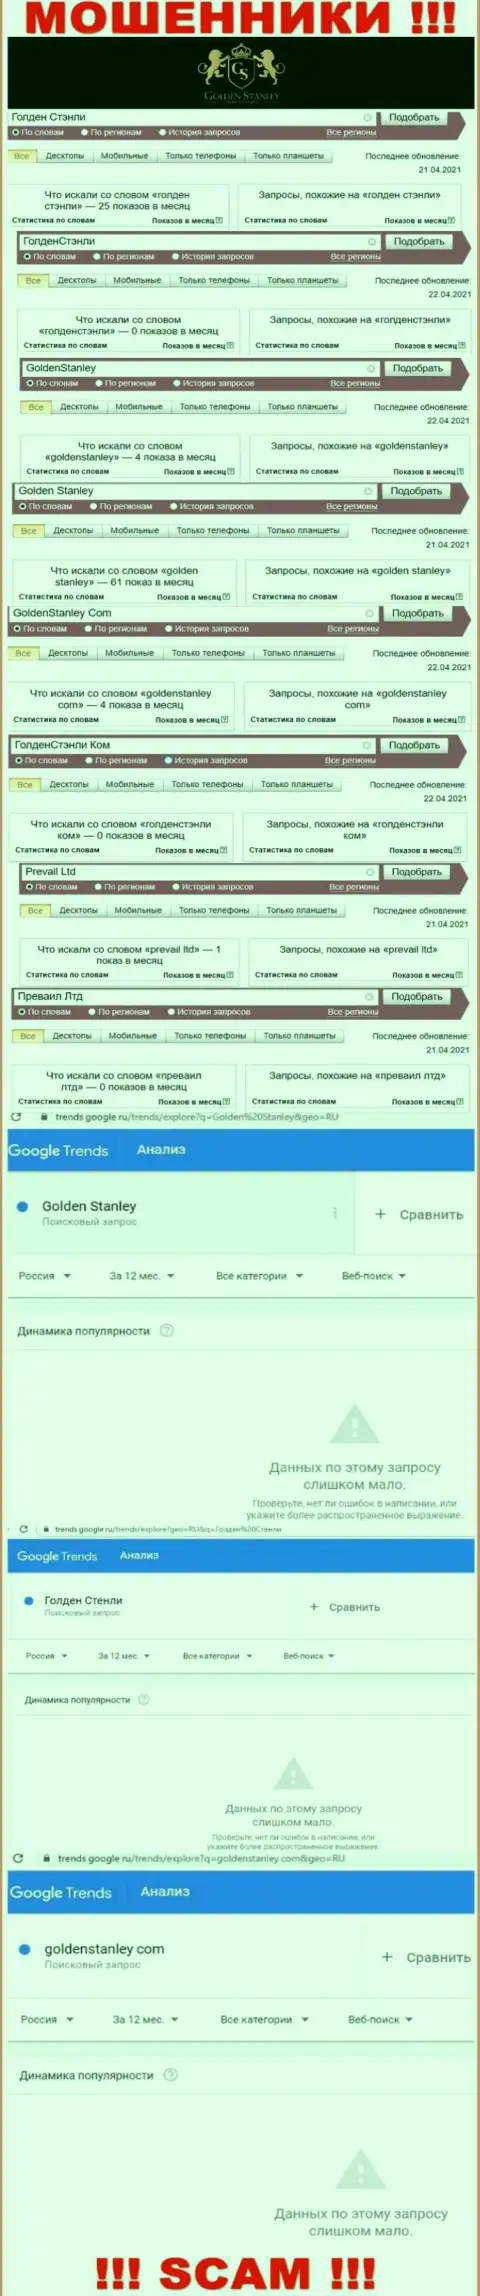 Статистические данные online запросов в поисковиках глобальной сети относительно мошенников GoldenStanley